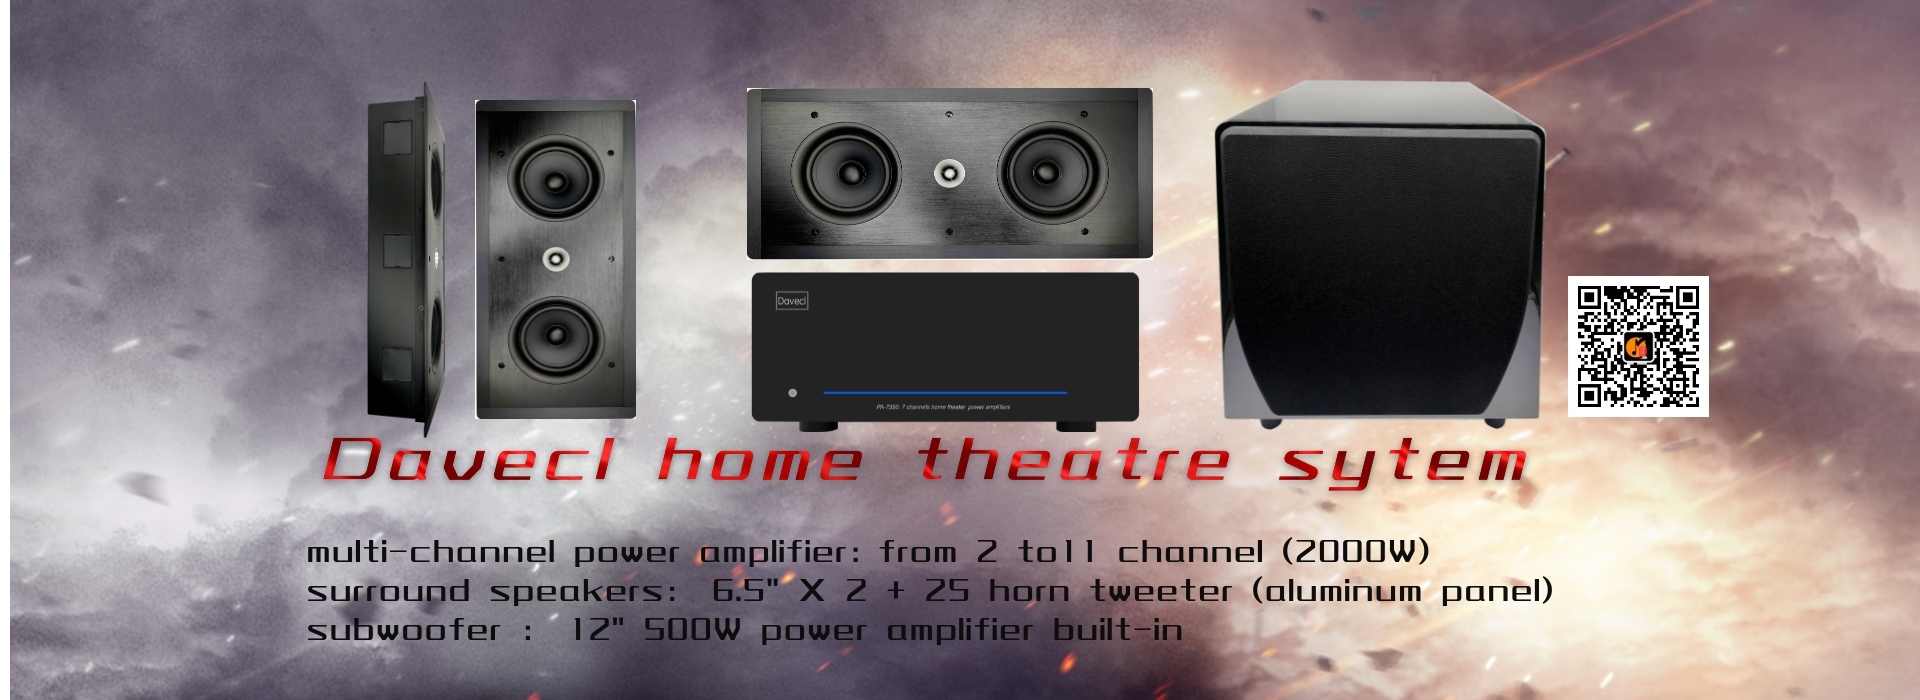 家庭影院系统-7声道功放-7环绕音箱-12寸低音炮-家庭影院音箱系统